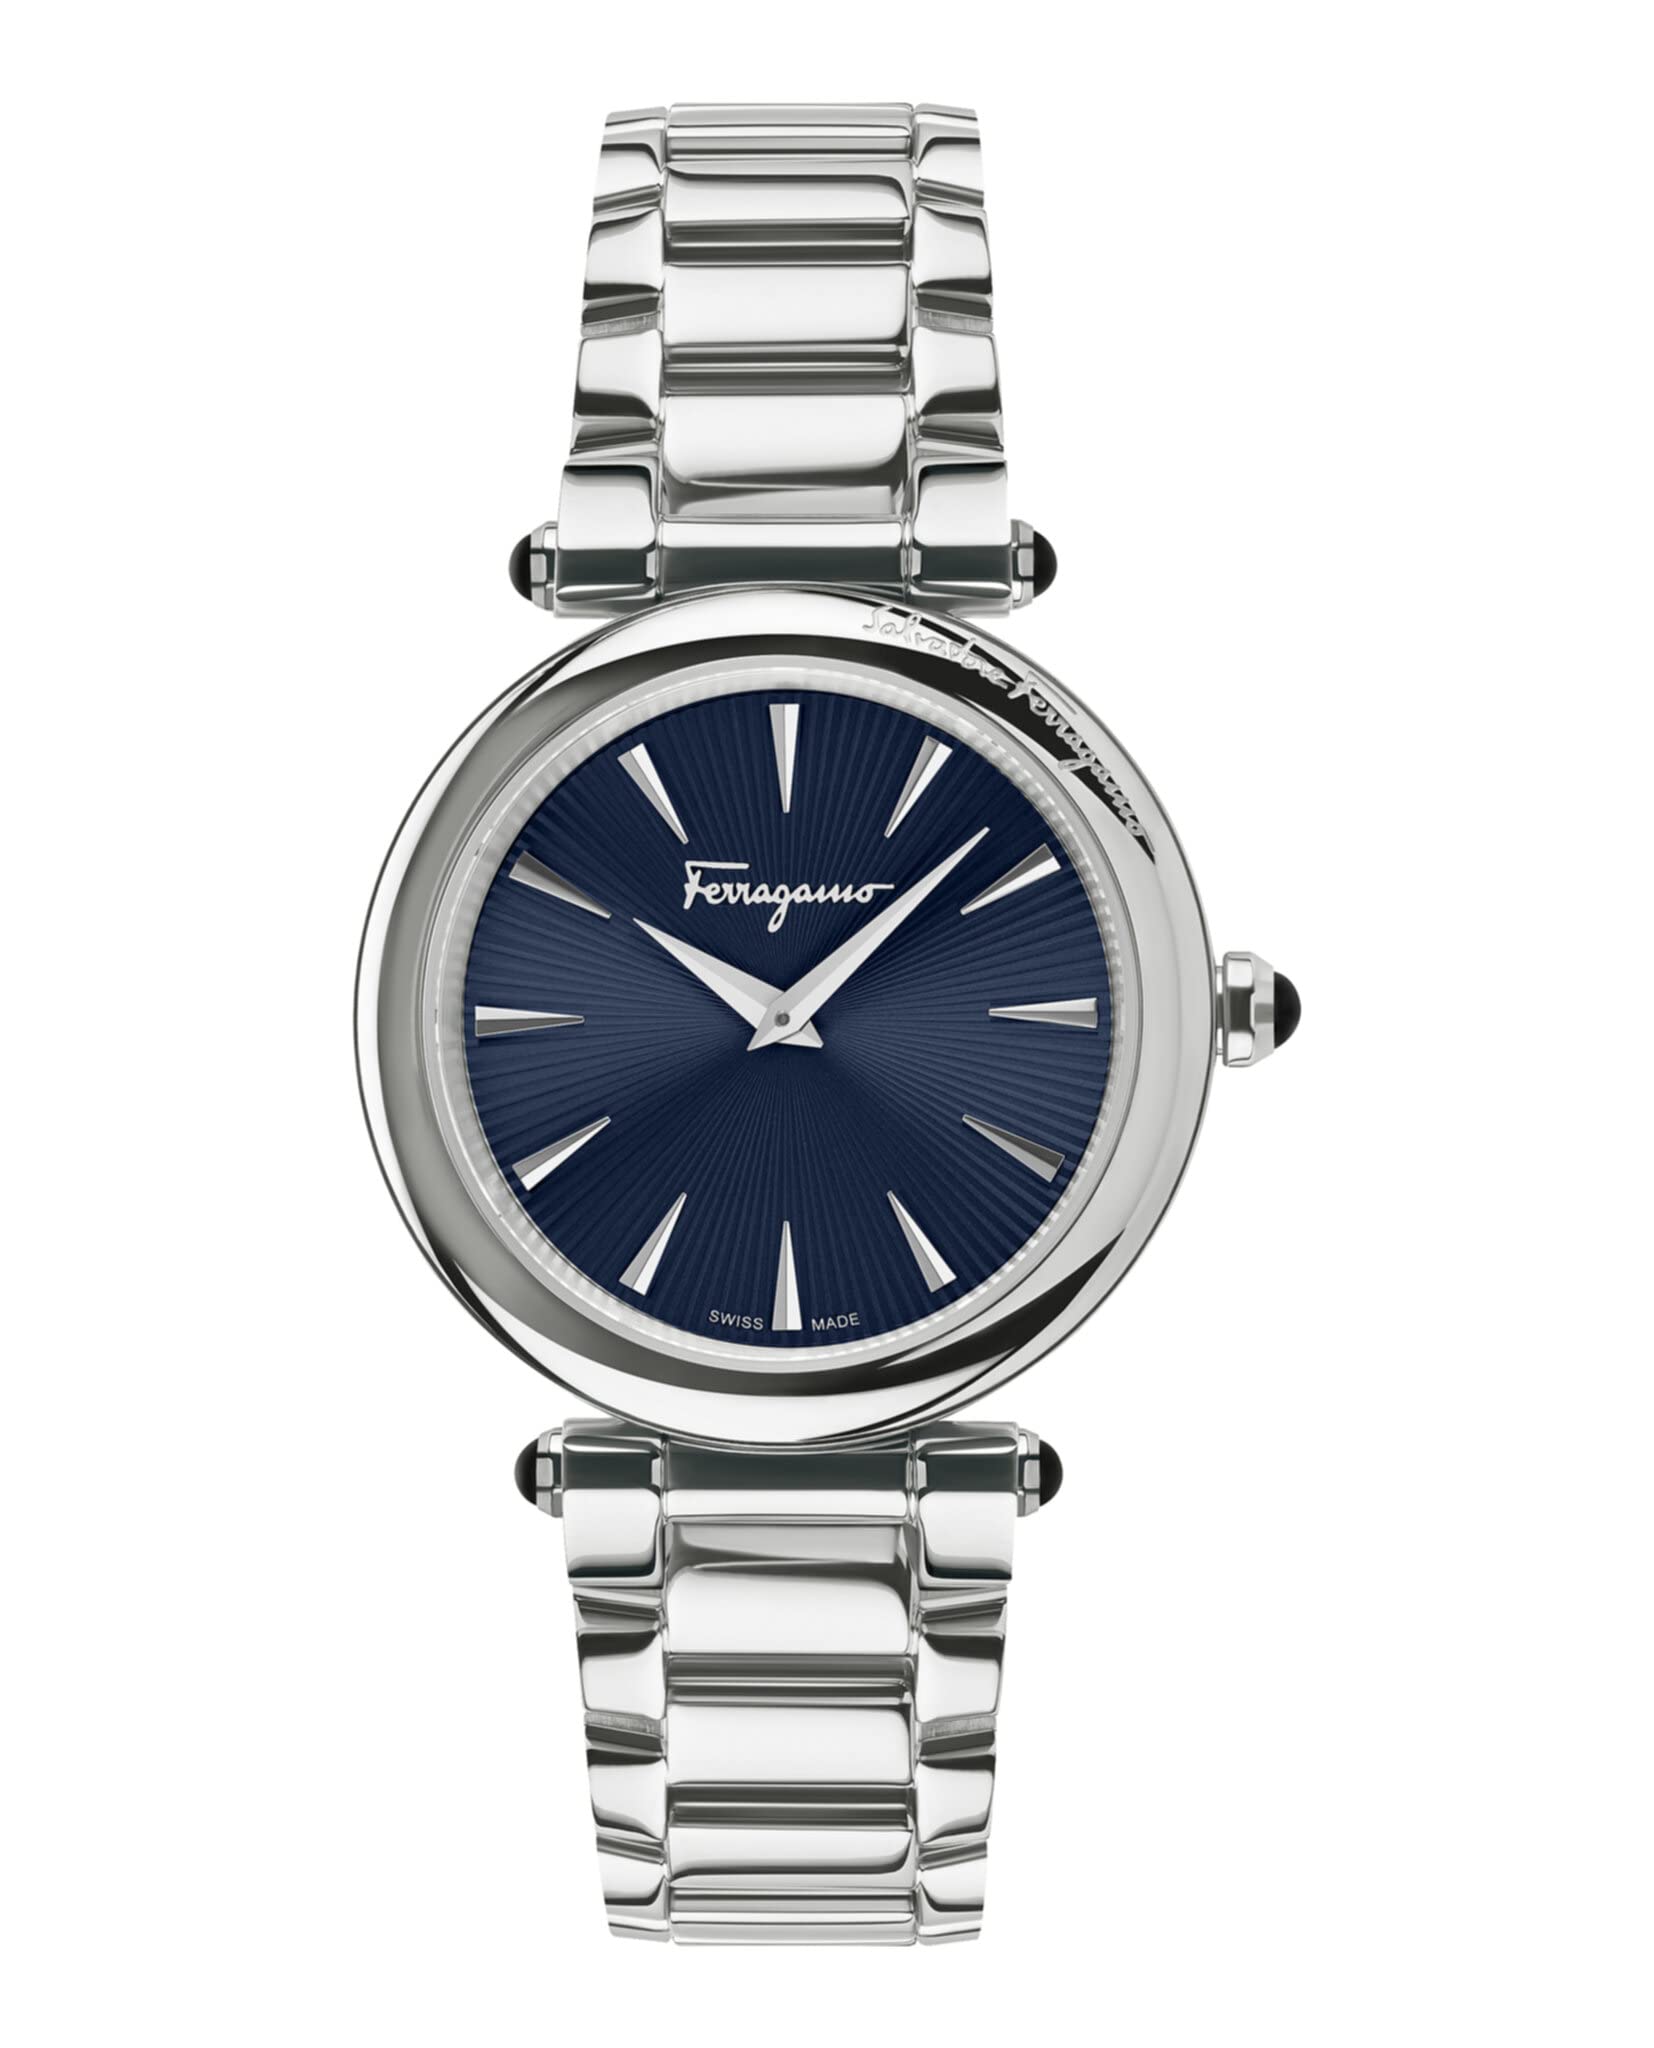 Salvatore Ferragamo Collection Luxury Womens Watch Timepiece